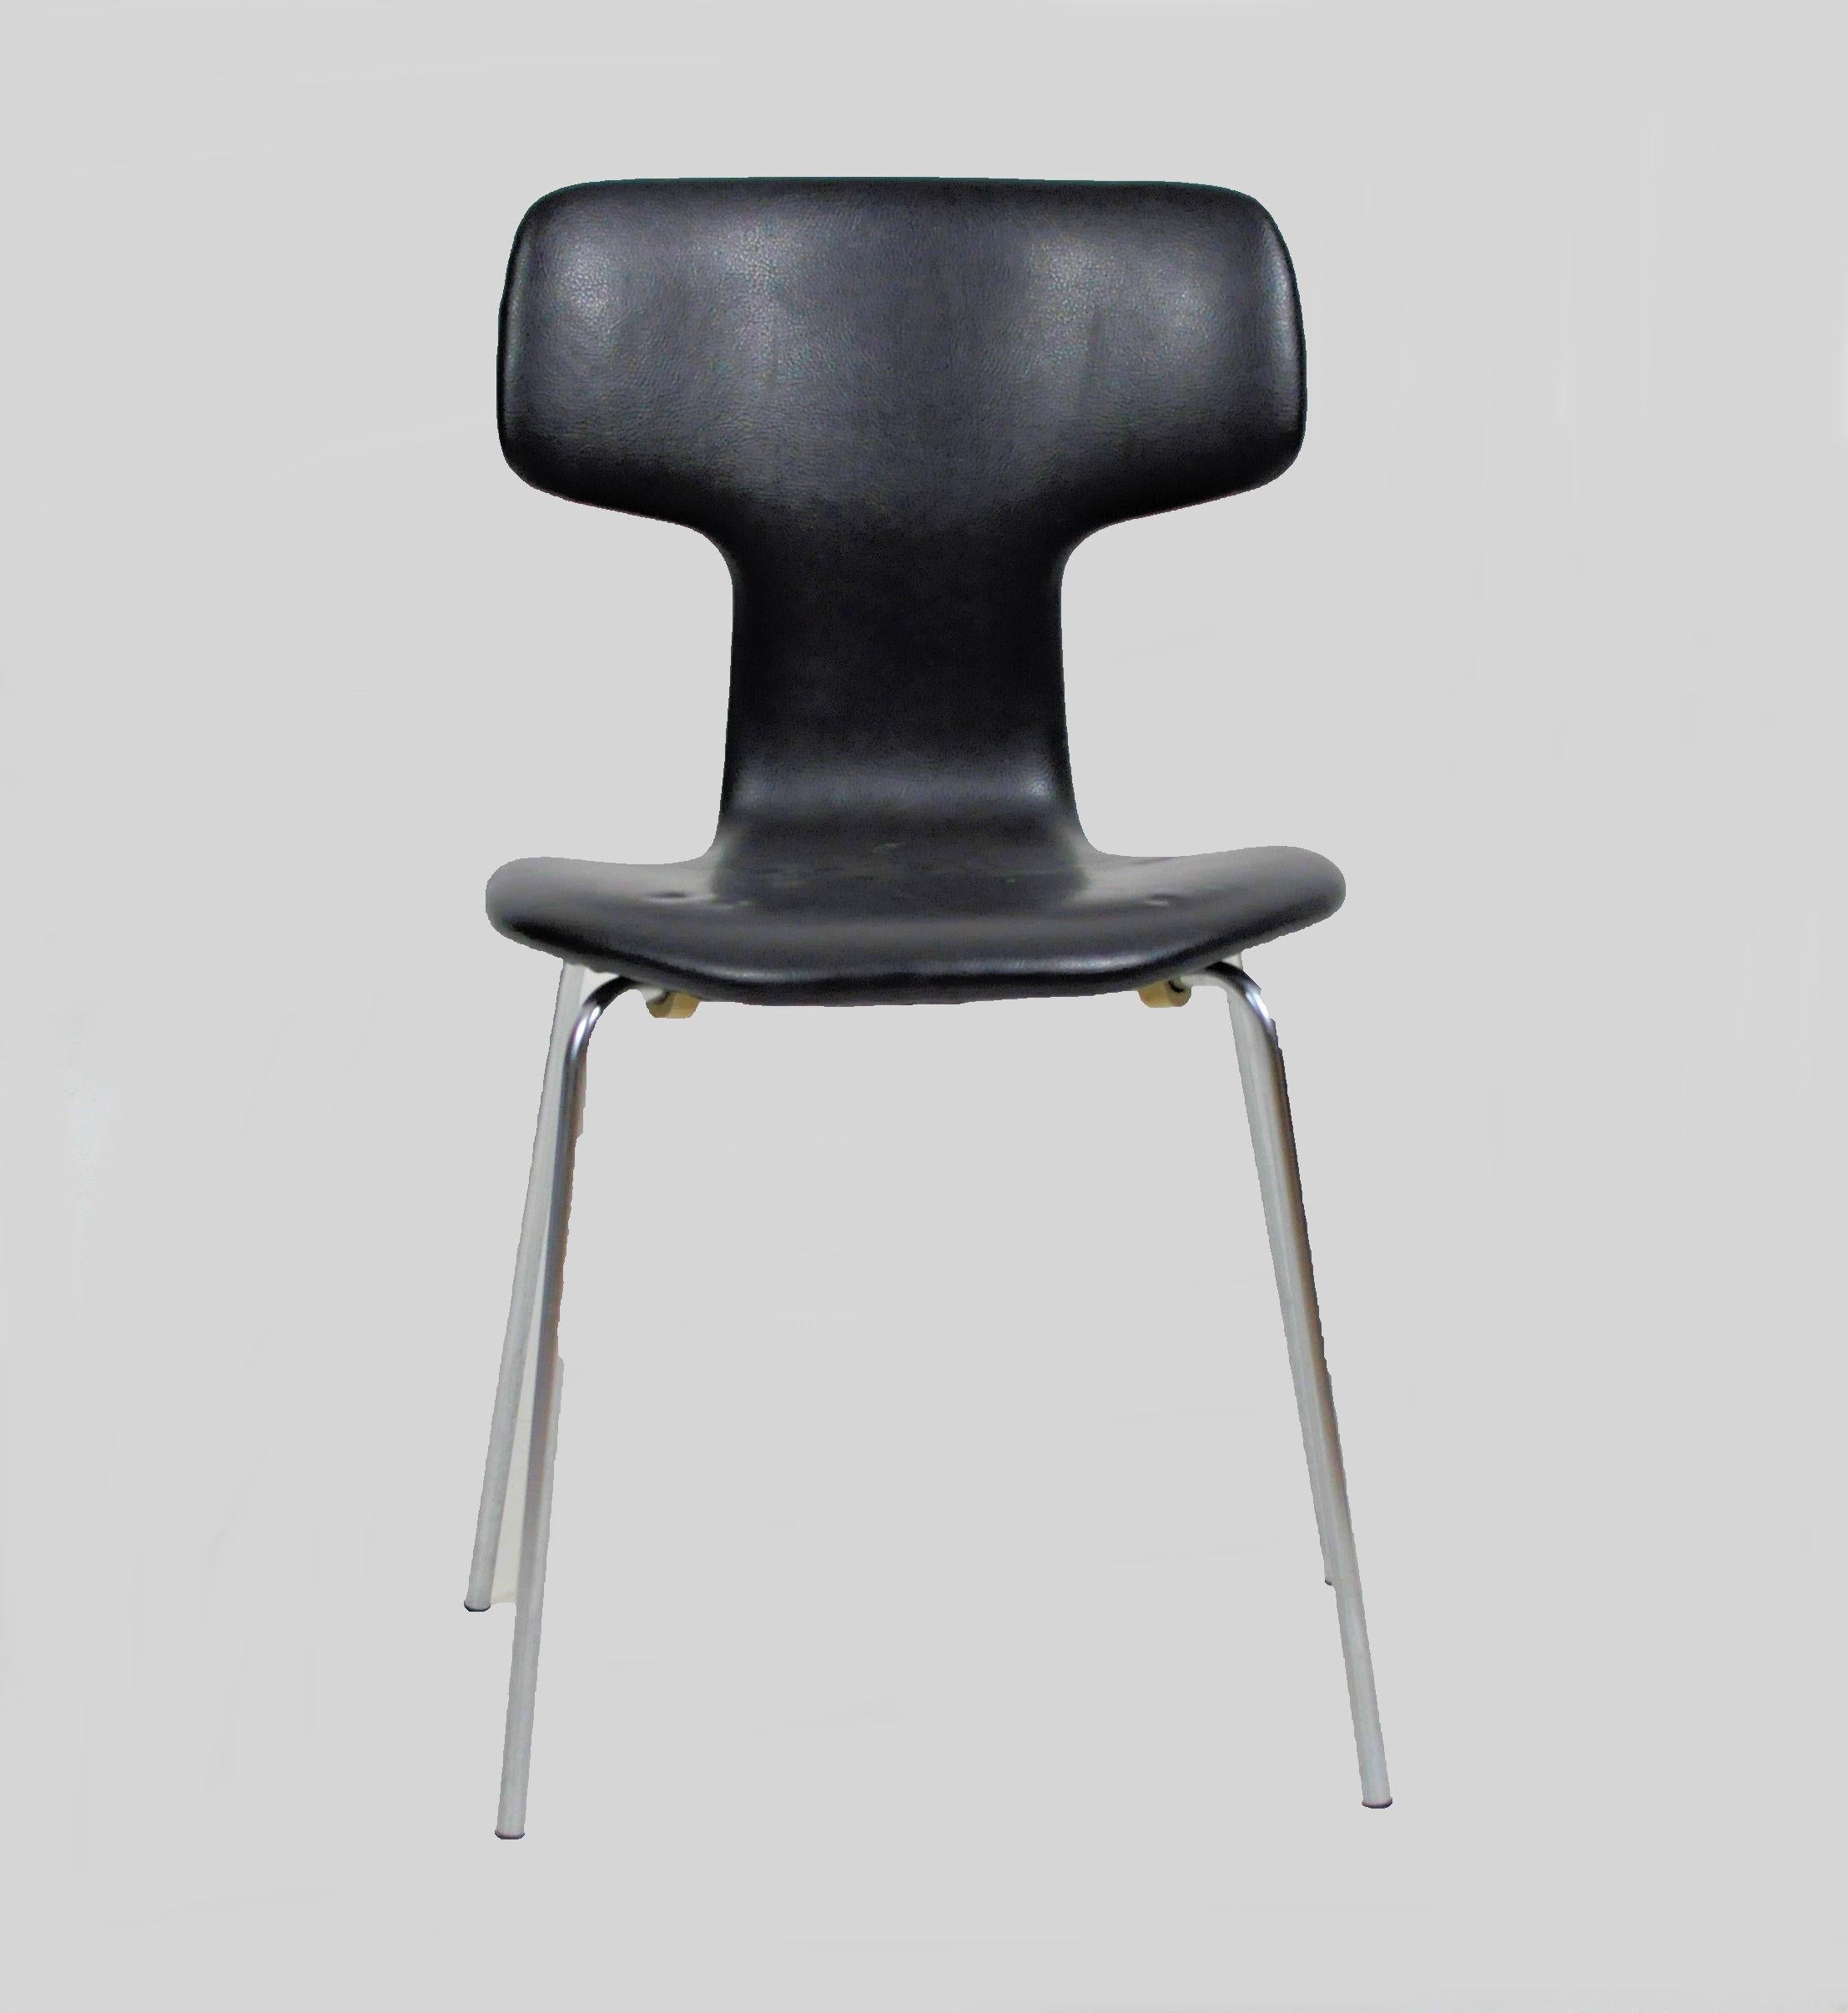 1960er Jahre Arne Jacobsen Satz von sechs T-Stühlen oder Hammerstühlen von Fritz Hansen

Satz von sechs dänischen Vintage, Arne Jacobsen Modell 3103 genannt 